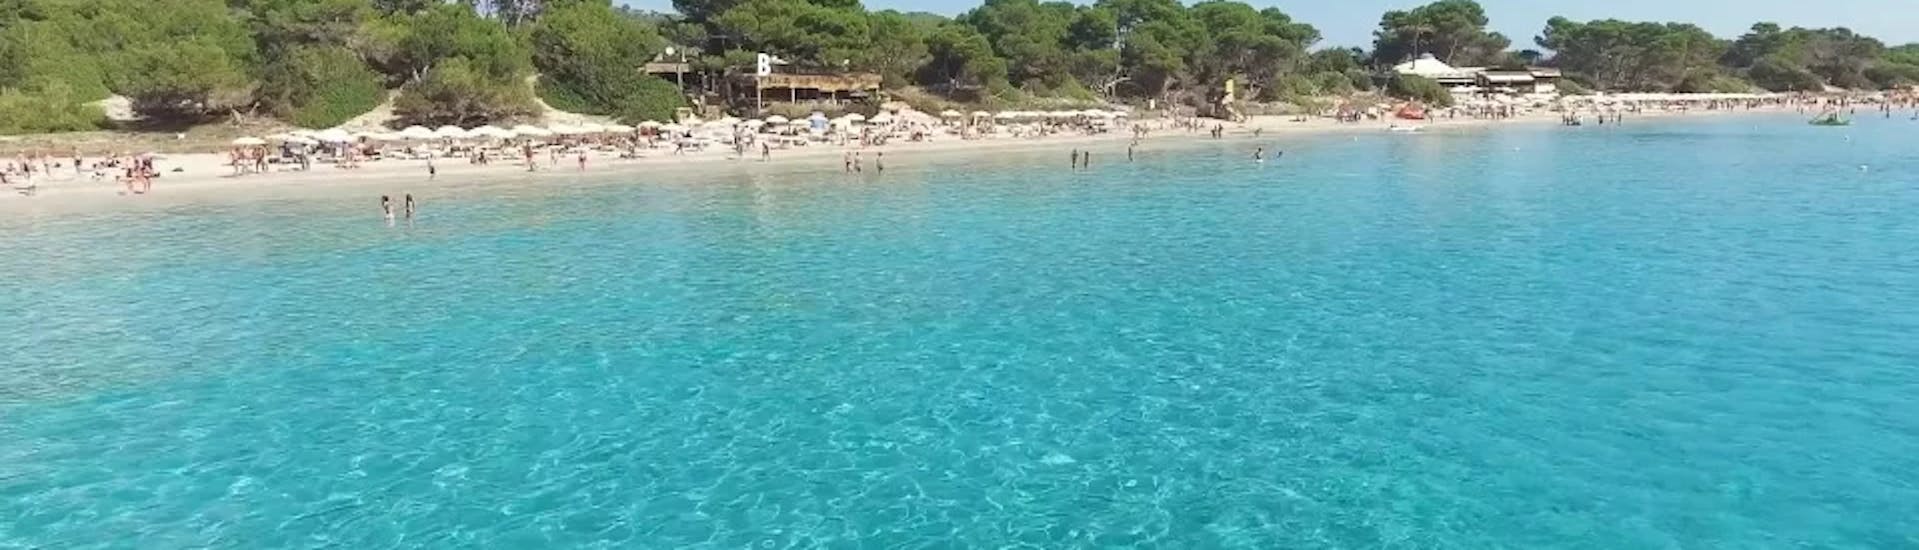 Bootverhuur in Santa Eulària in Ibiza (tot 5 personen) zonder vaarbewijs.